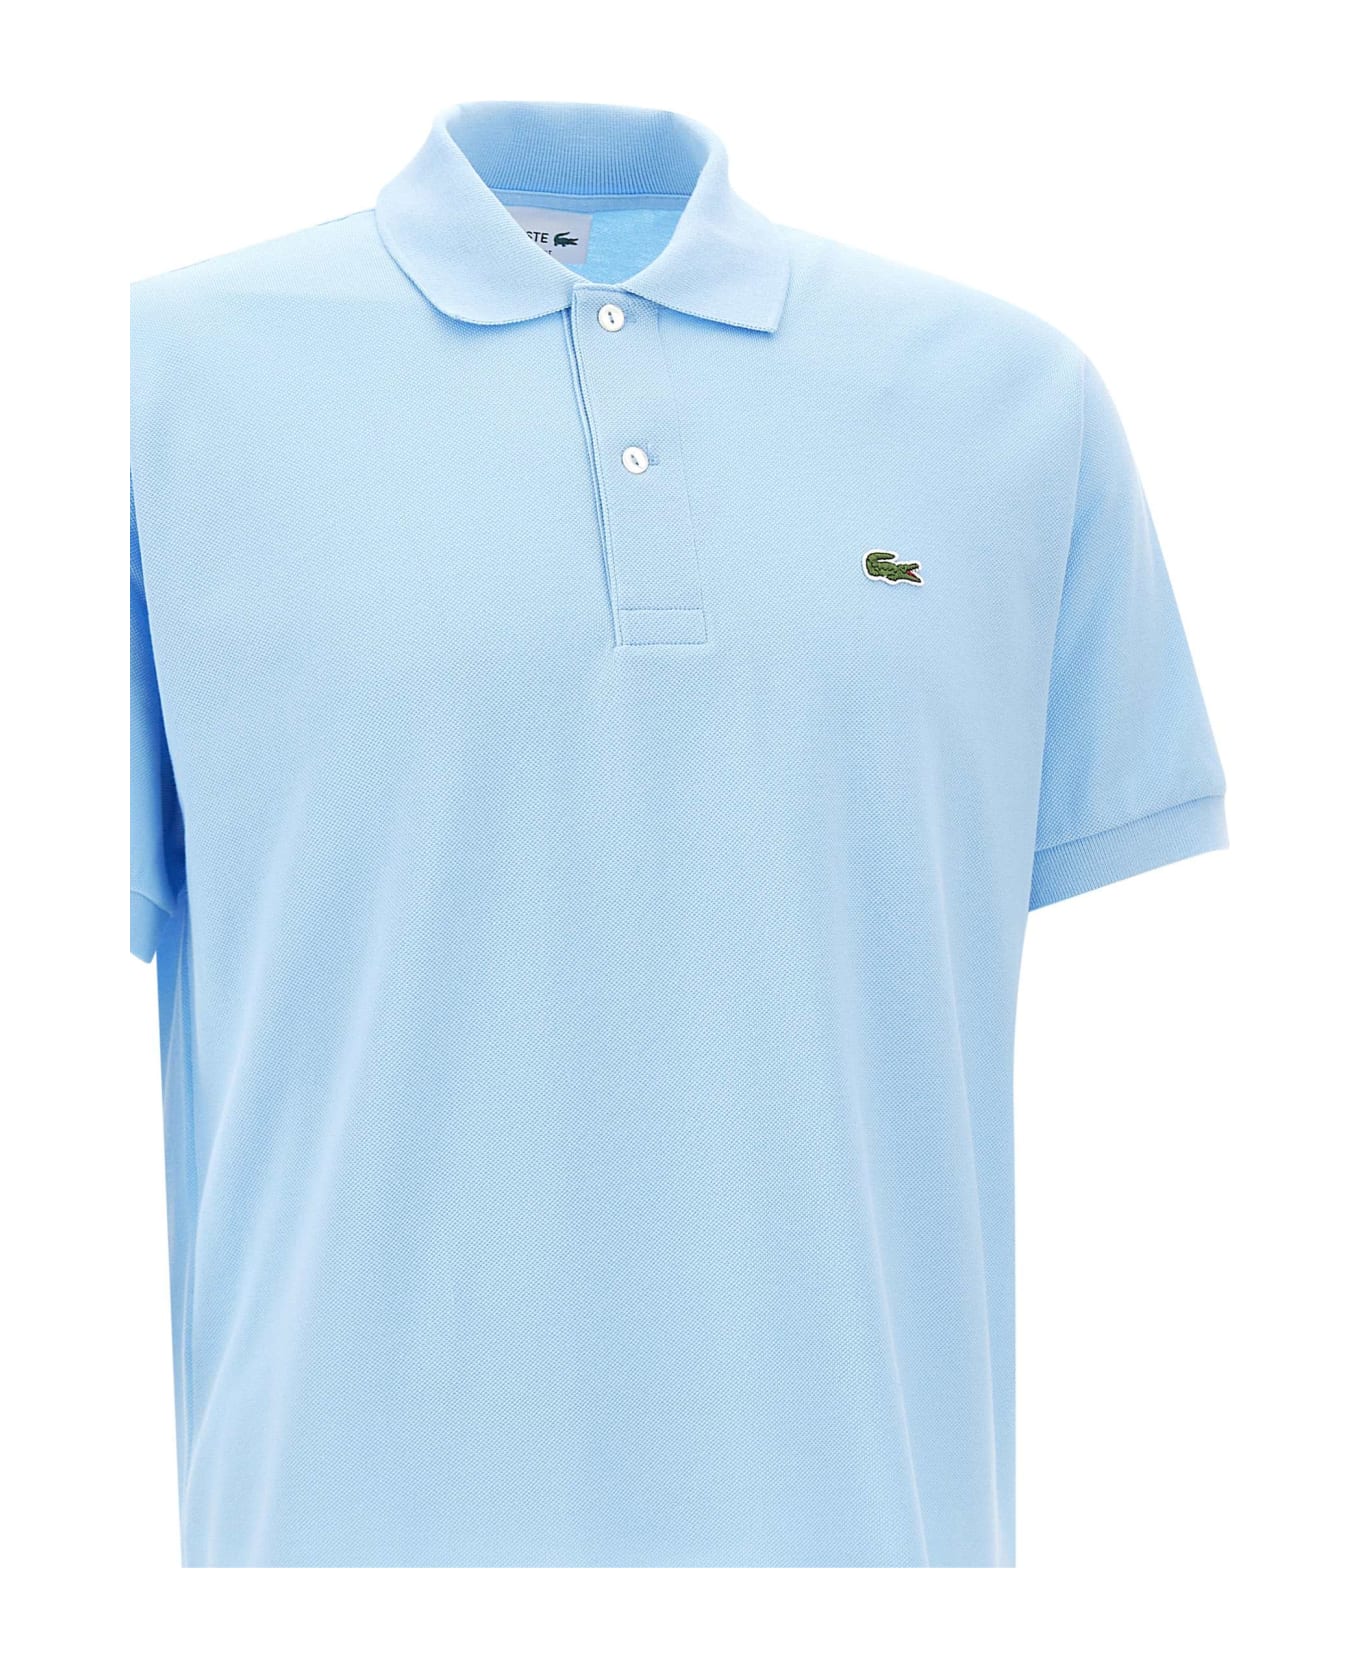 Lacoste Cotton Piquet Polo Shirt - LIGHT BLUE ポロシャツ